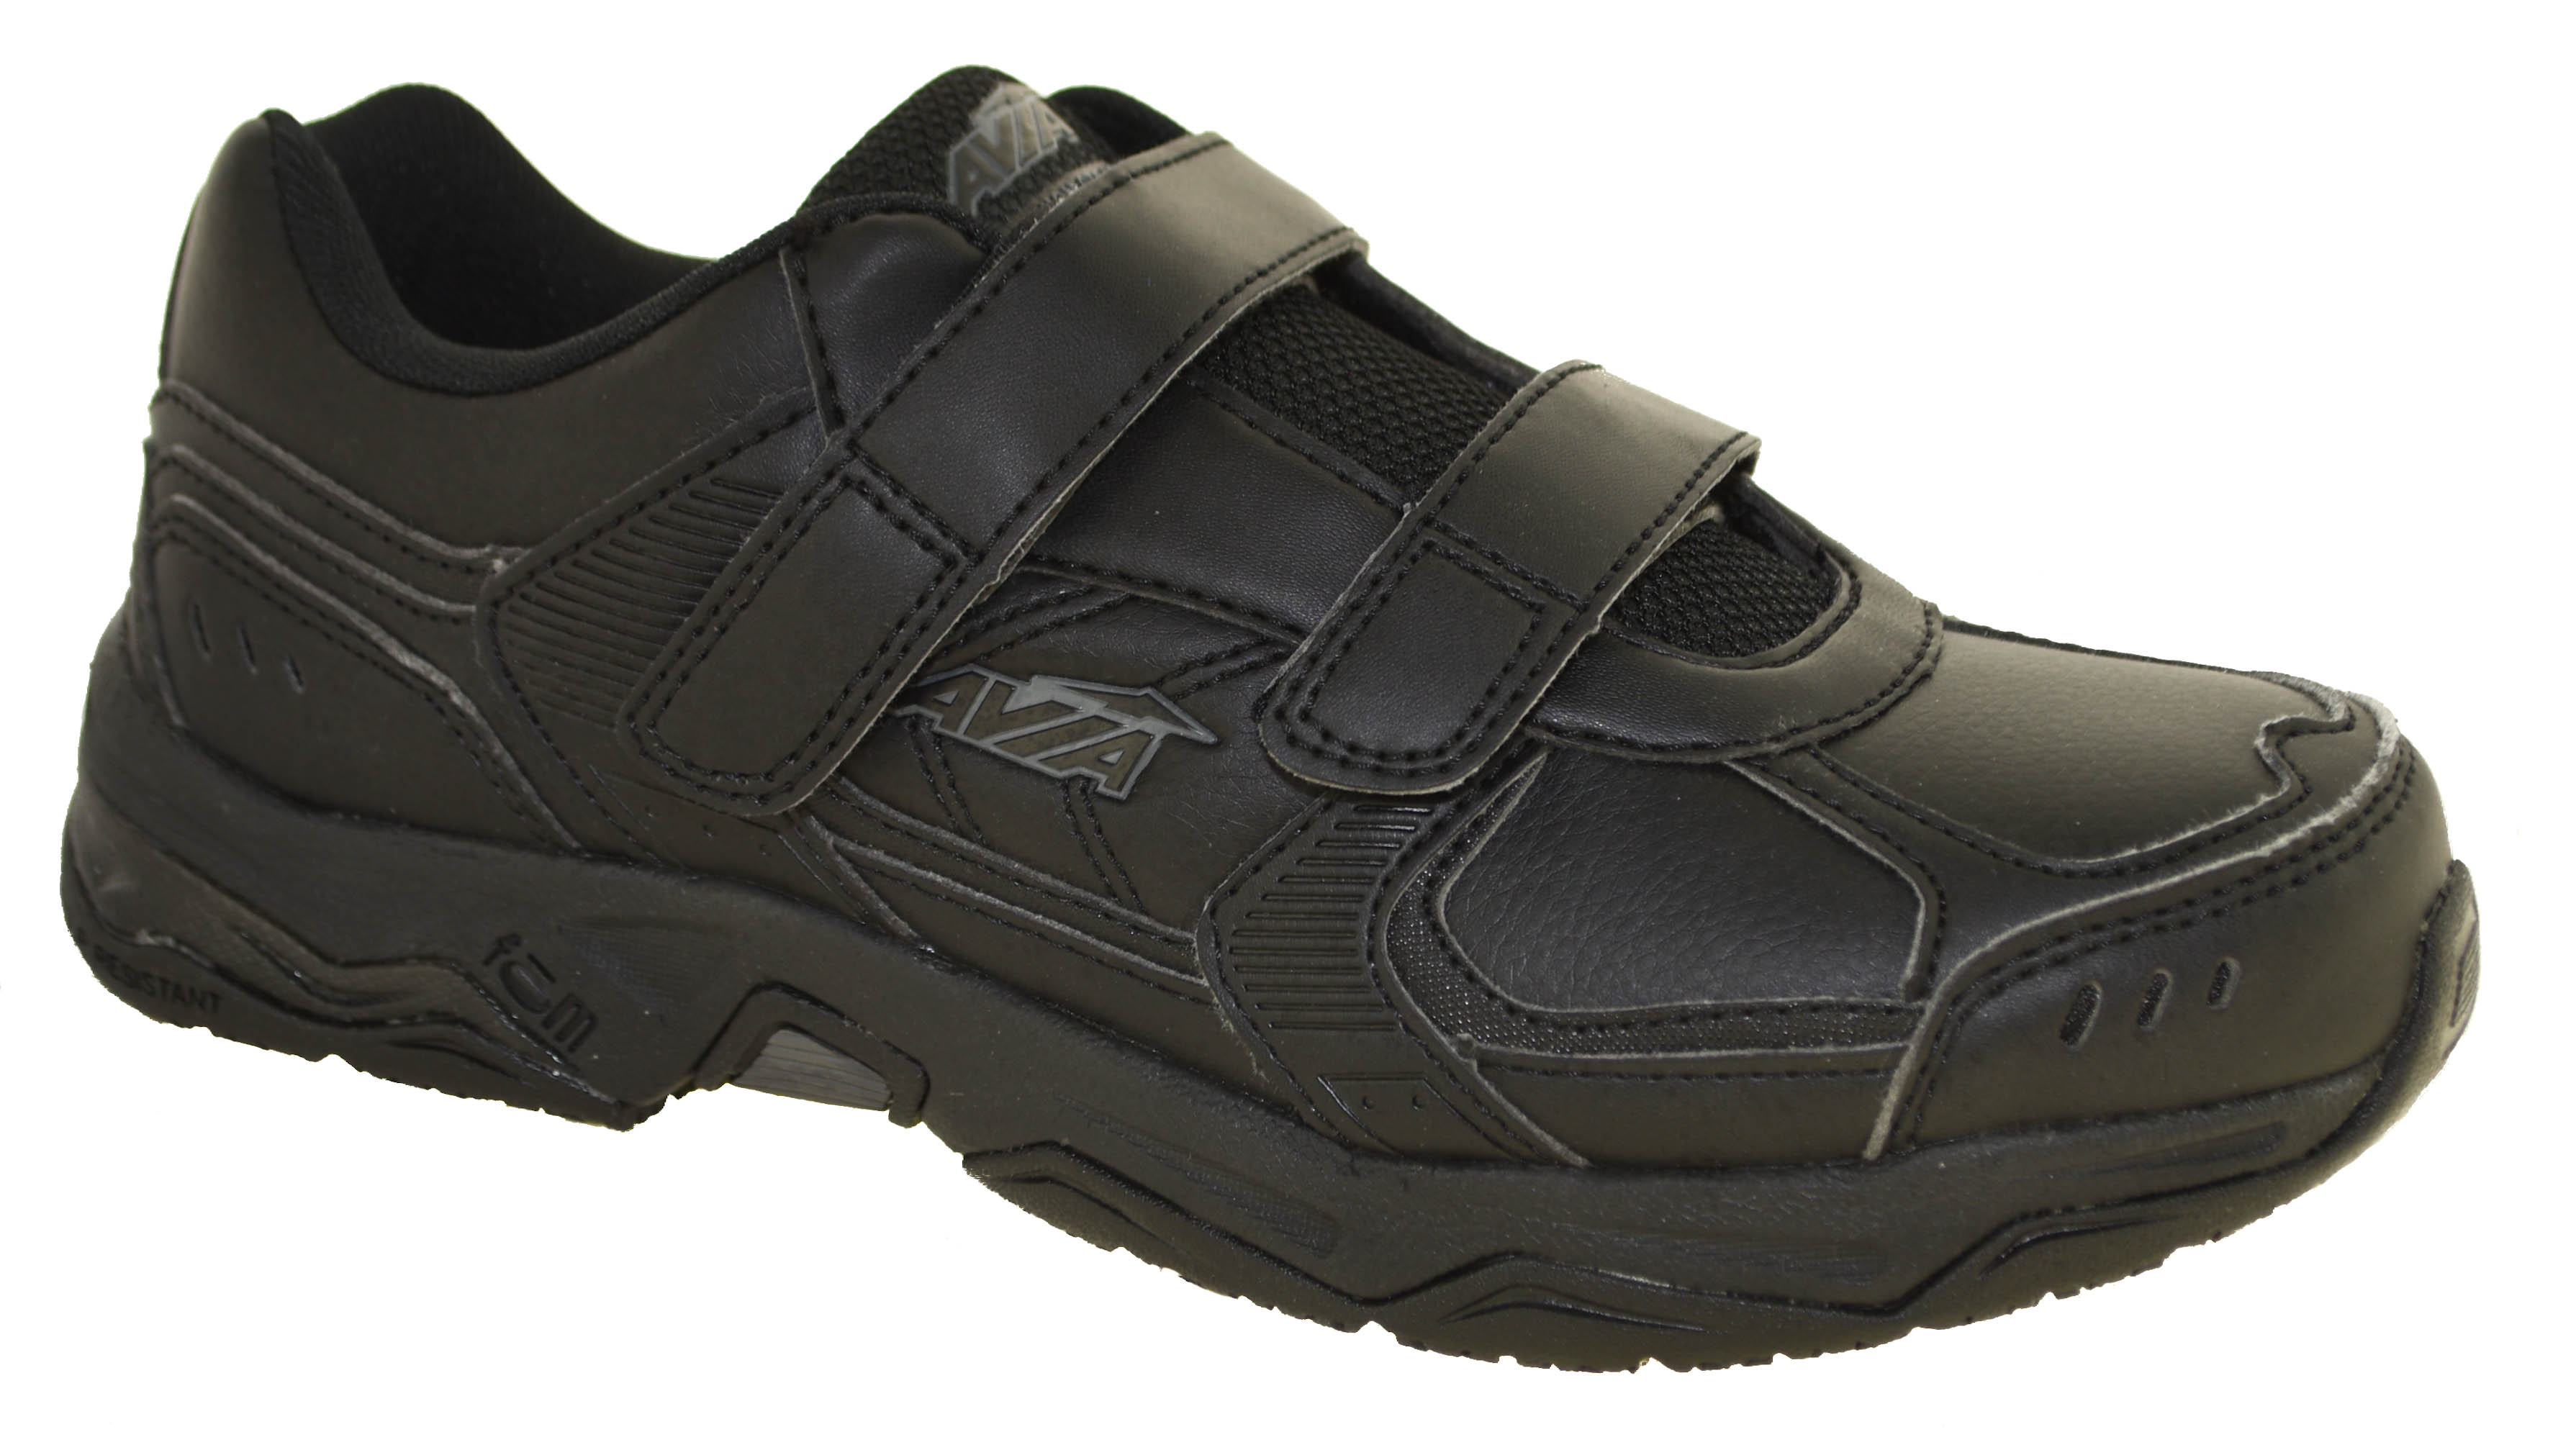 Avia Men's Avi-Union Strap Service Shoes Black Style A1442 | eBay